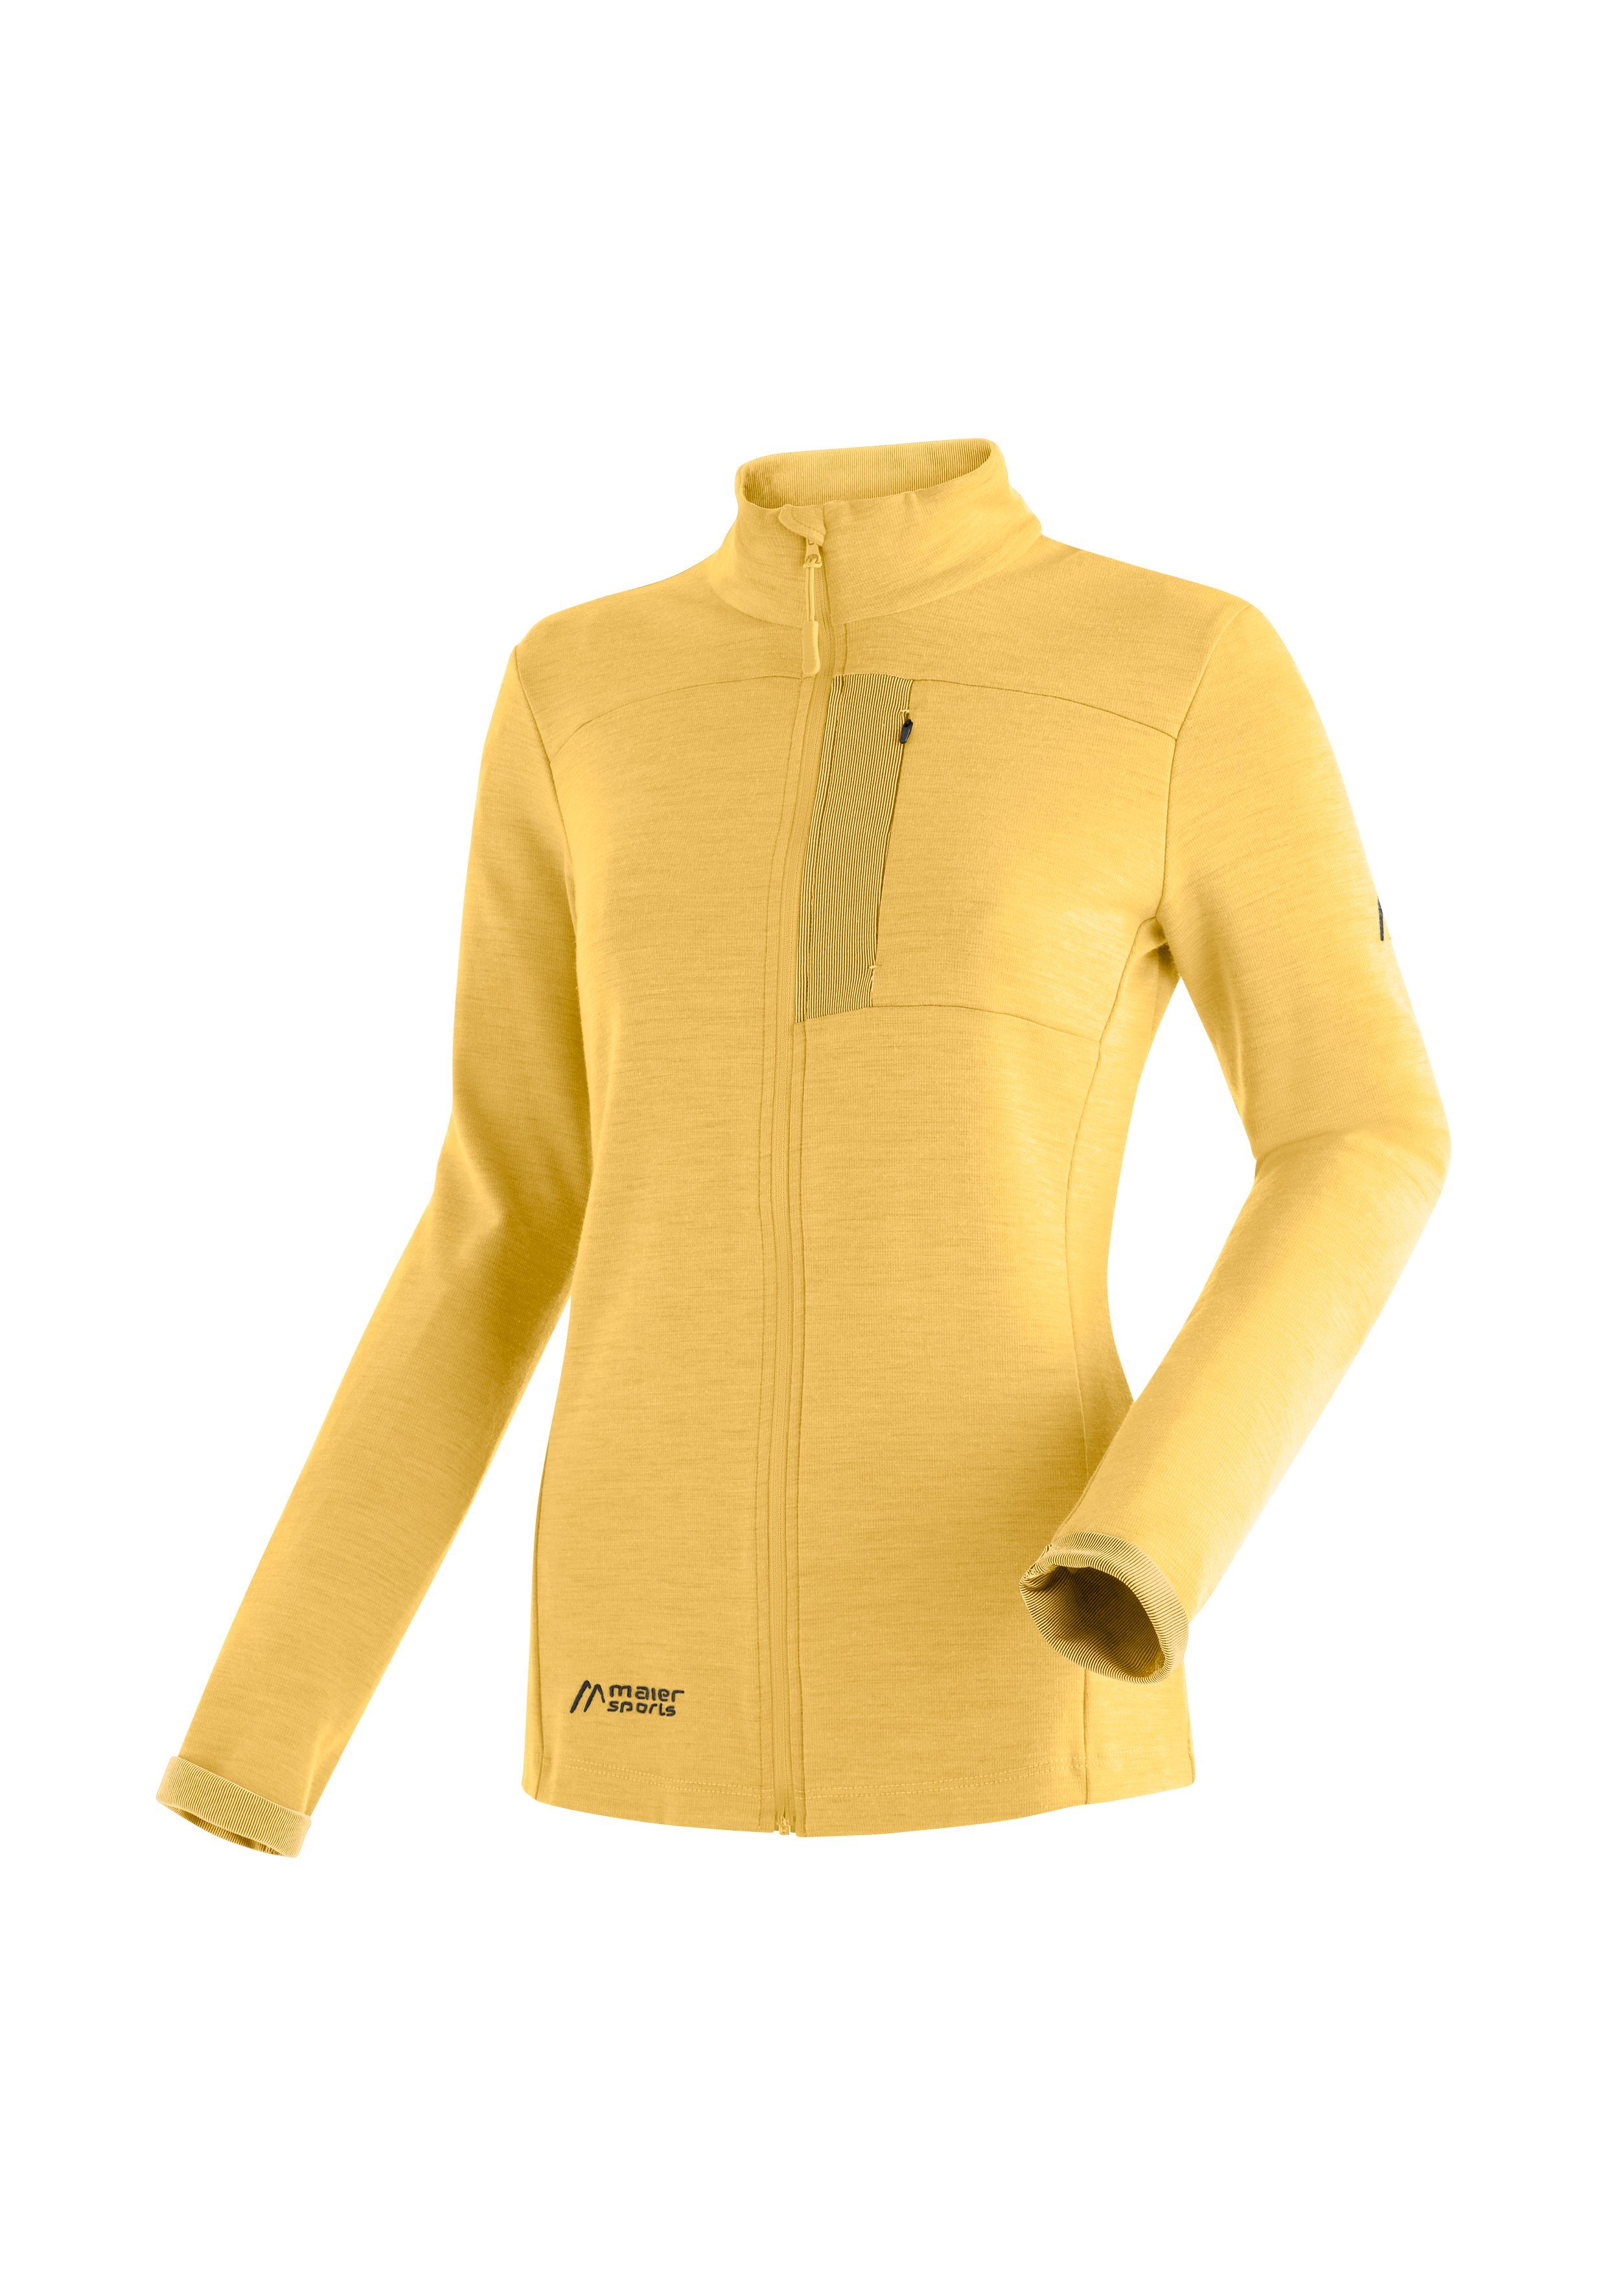 ideal Funktionsshirt für Skutvik für Maier Sports pastellgelb Outdoor-Aktivitäten W Midlayer-Jacke Damen,